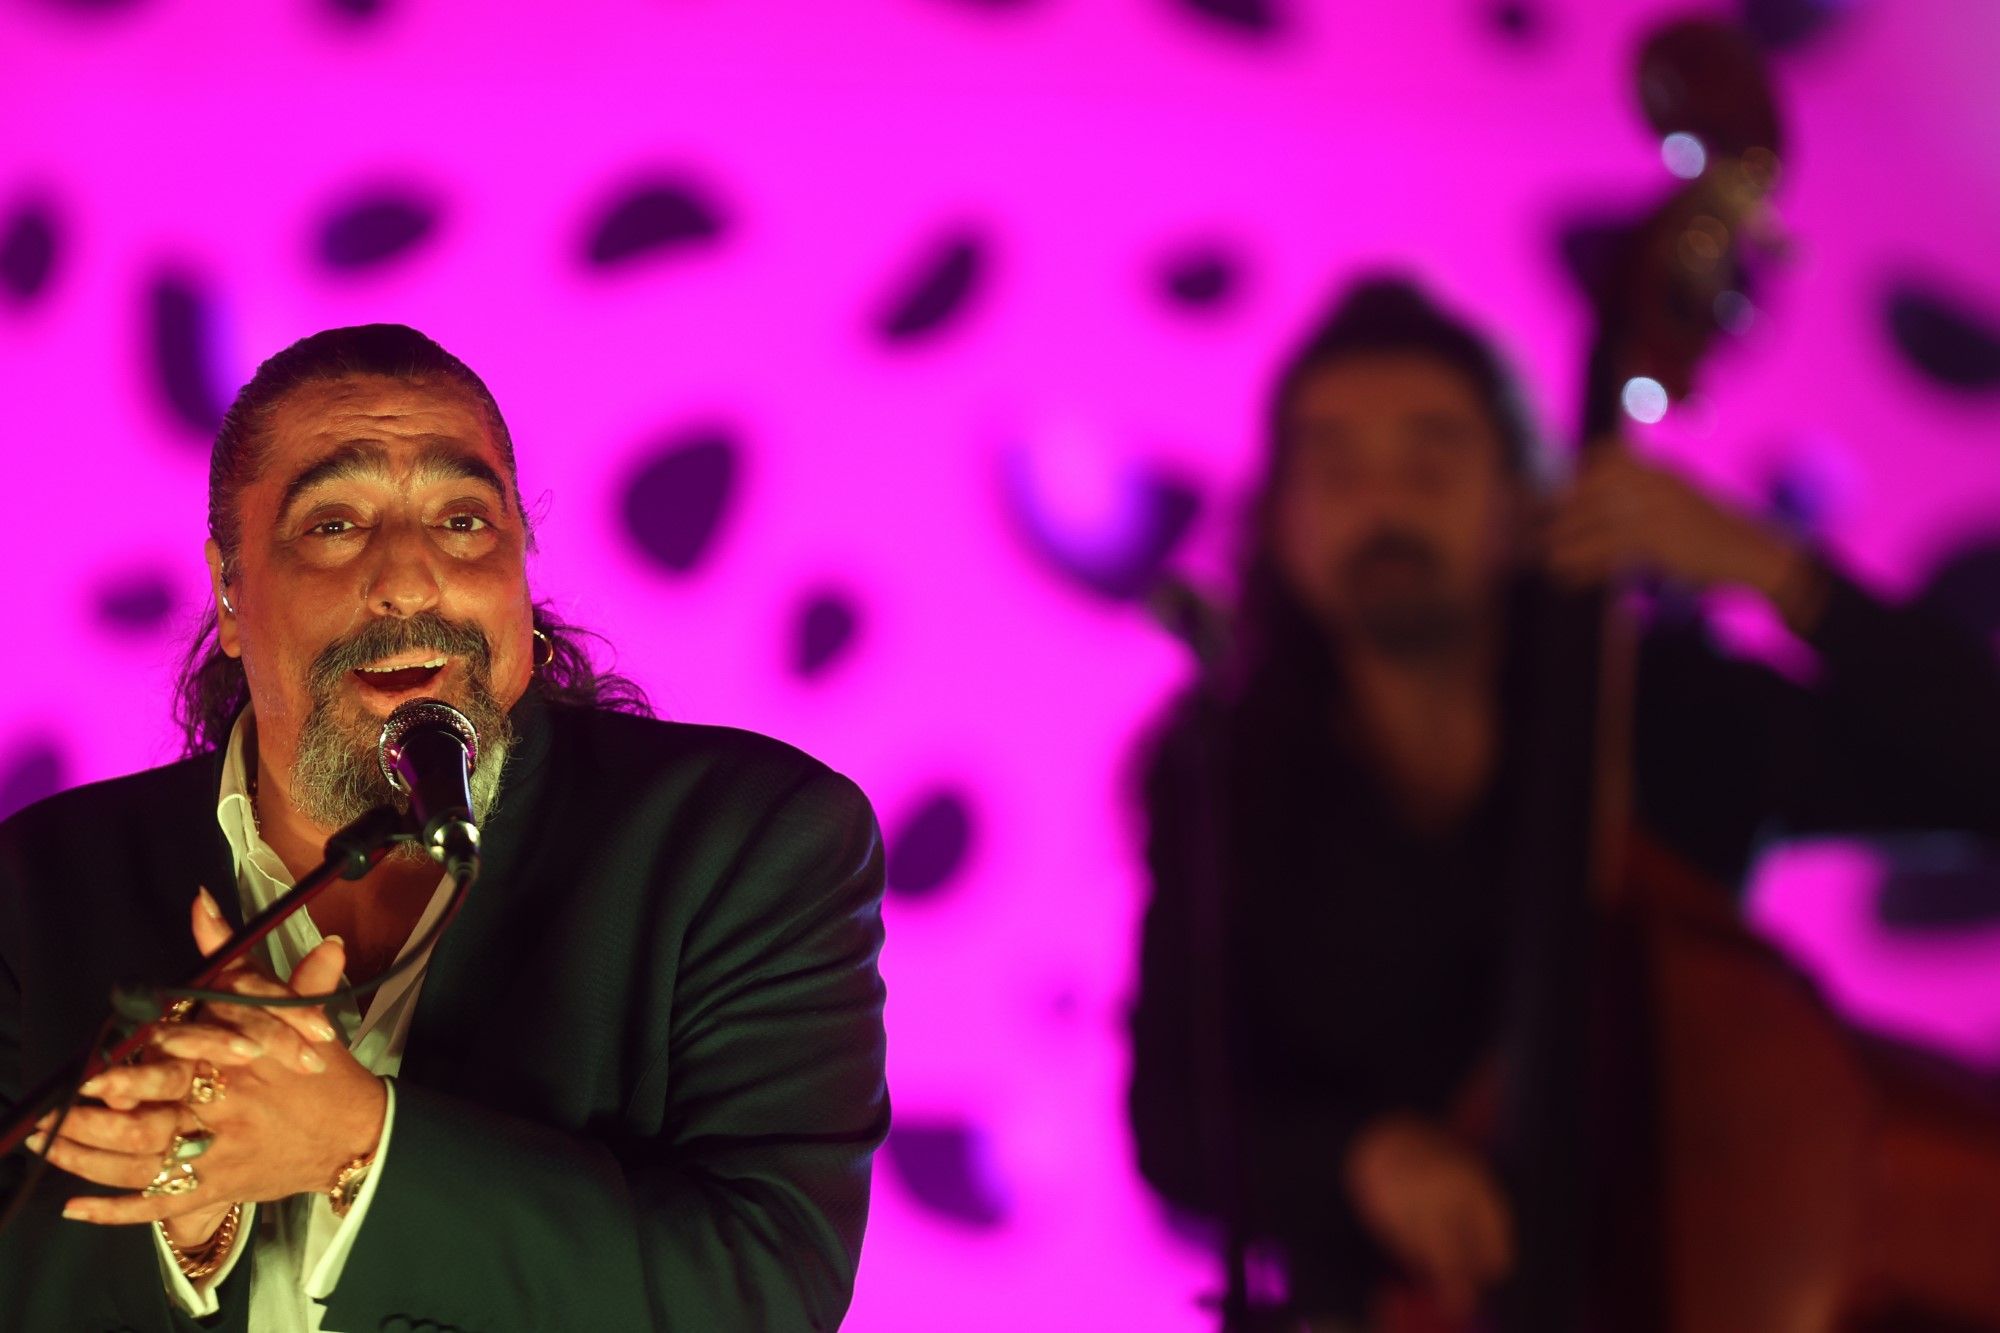 El Cigala abre El Portón a sus versiones flamencas del jazz, el soul y la salsa